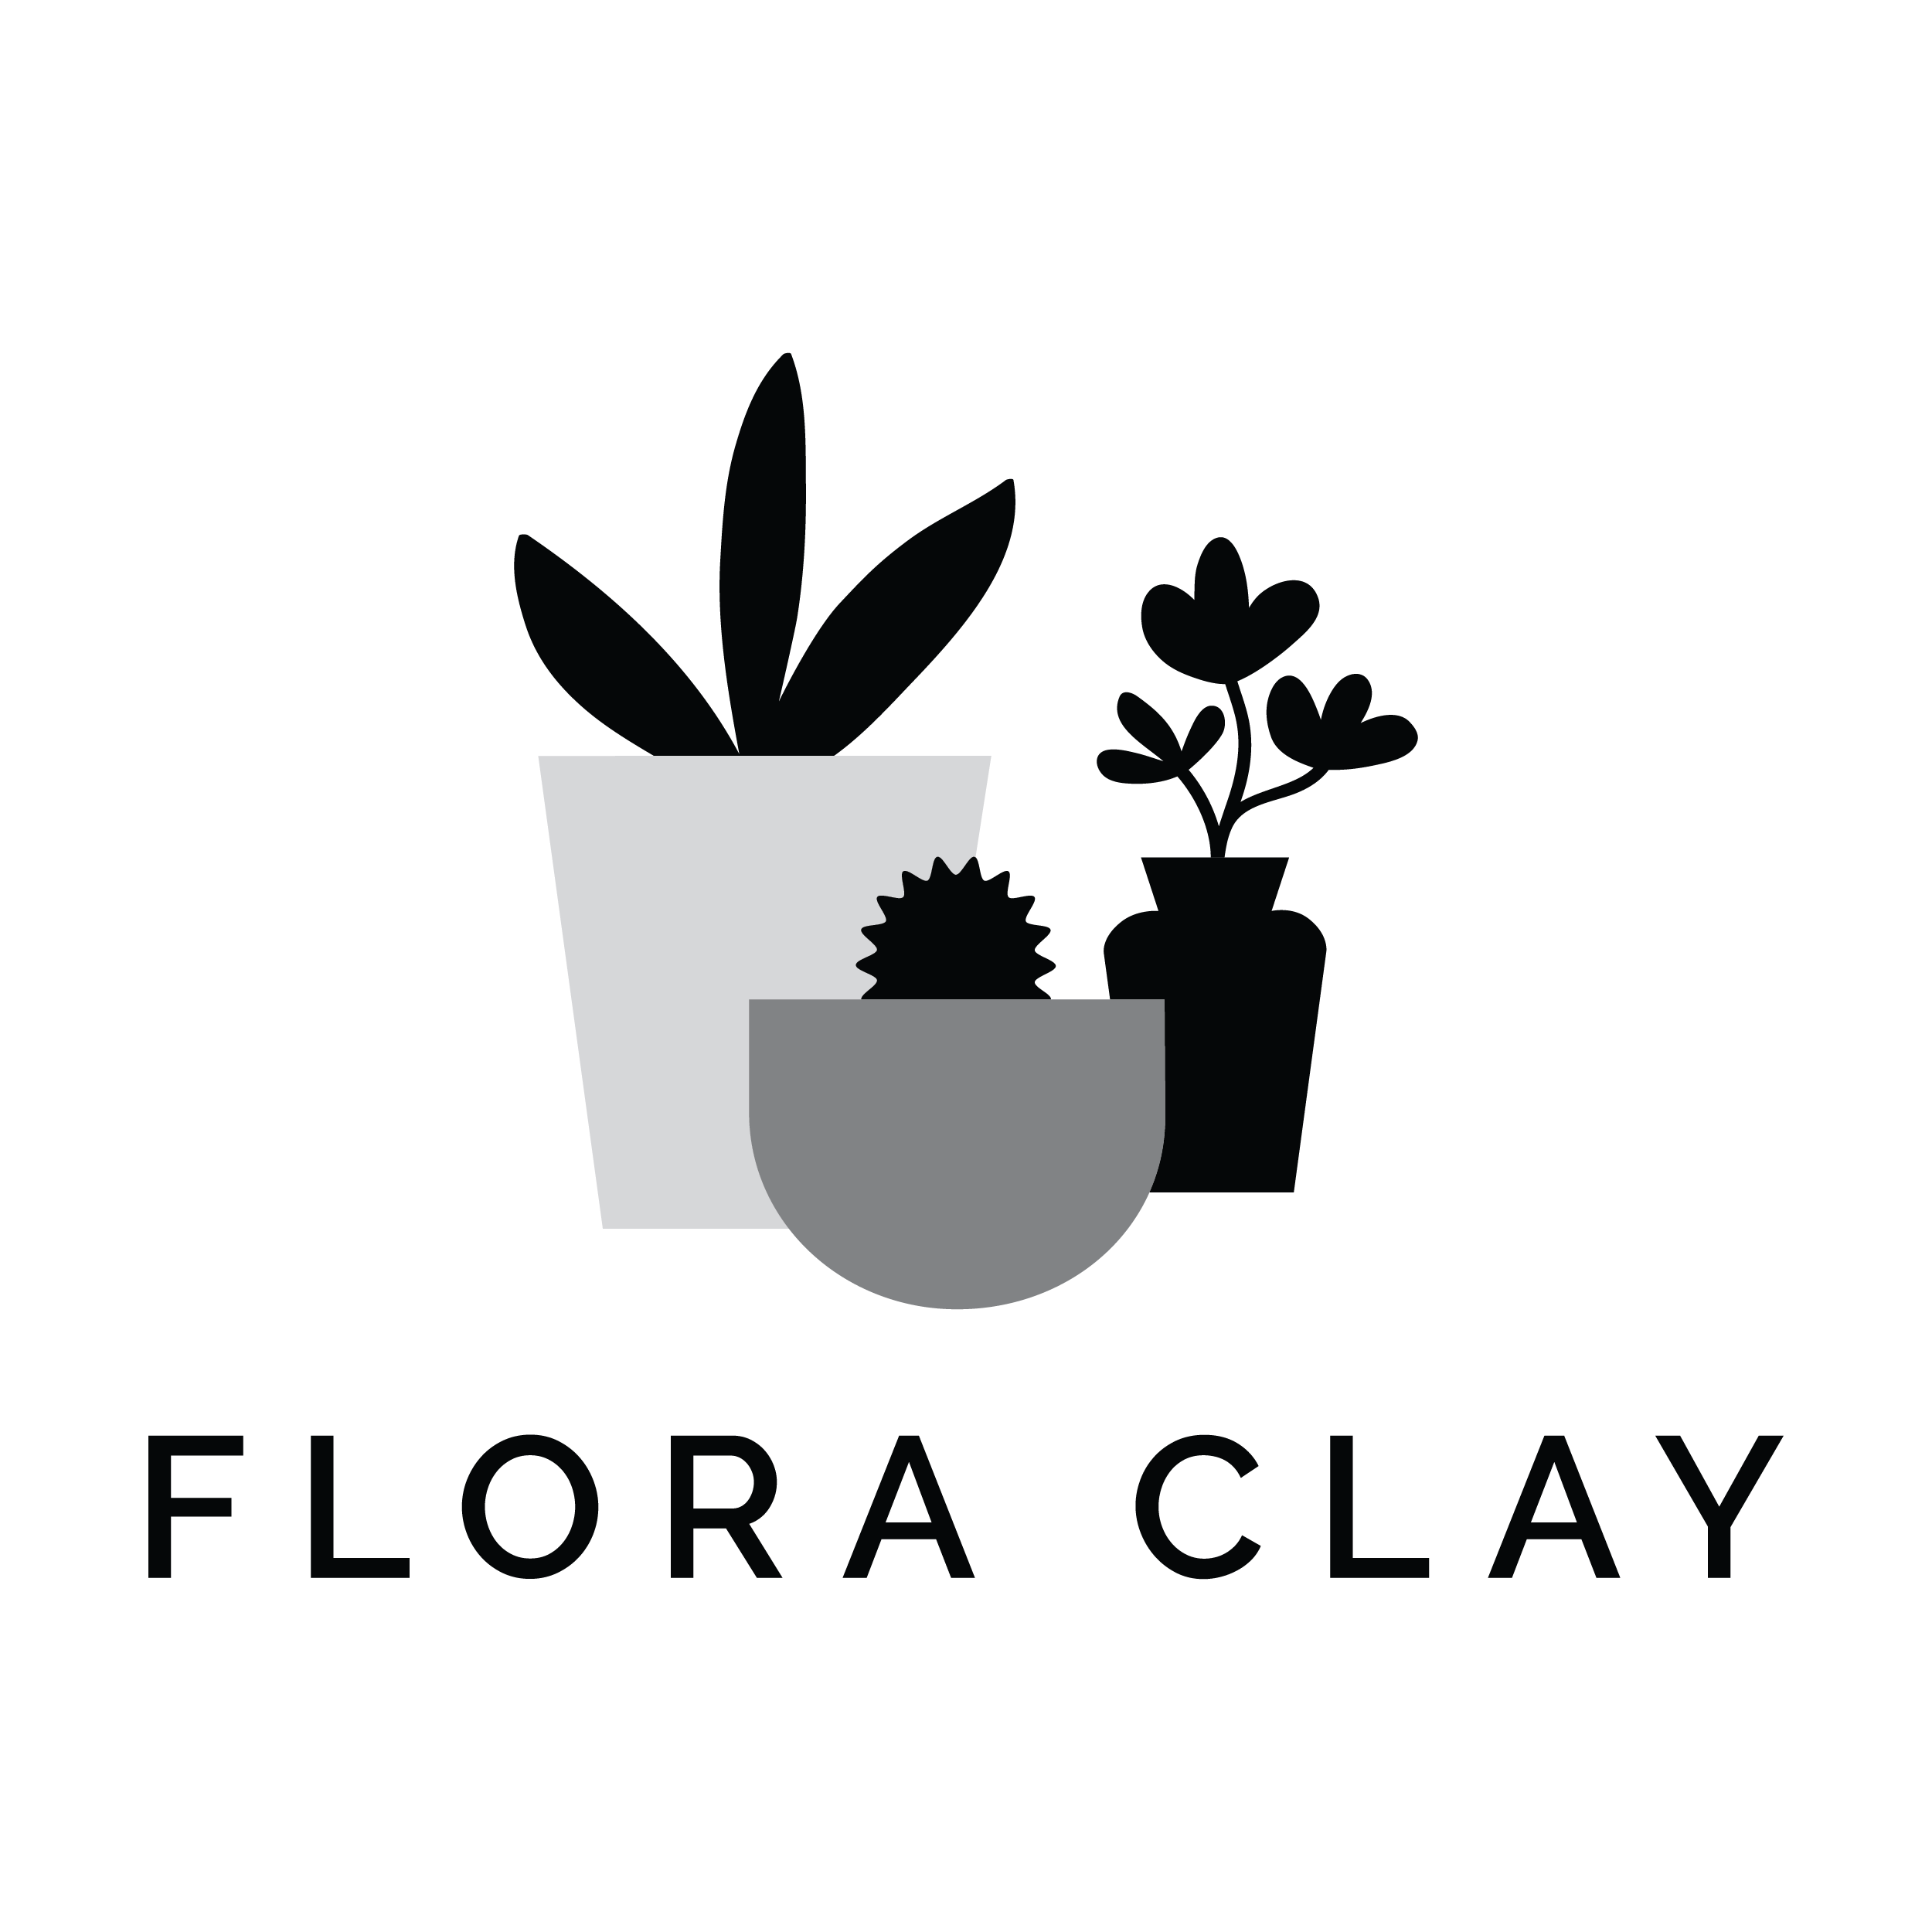 FLORA CLAY